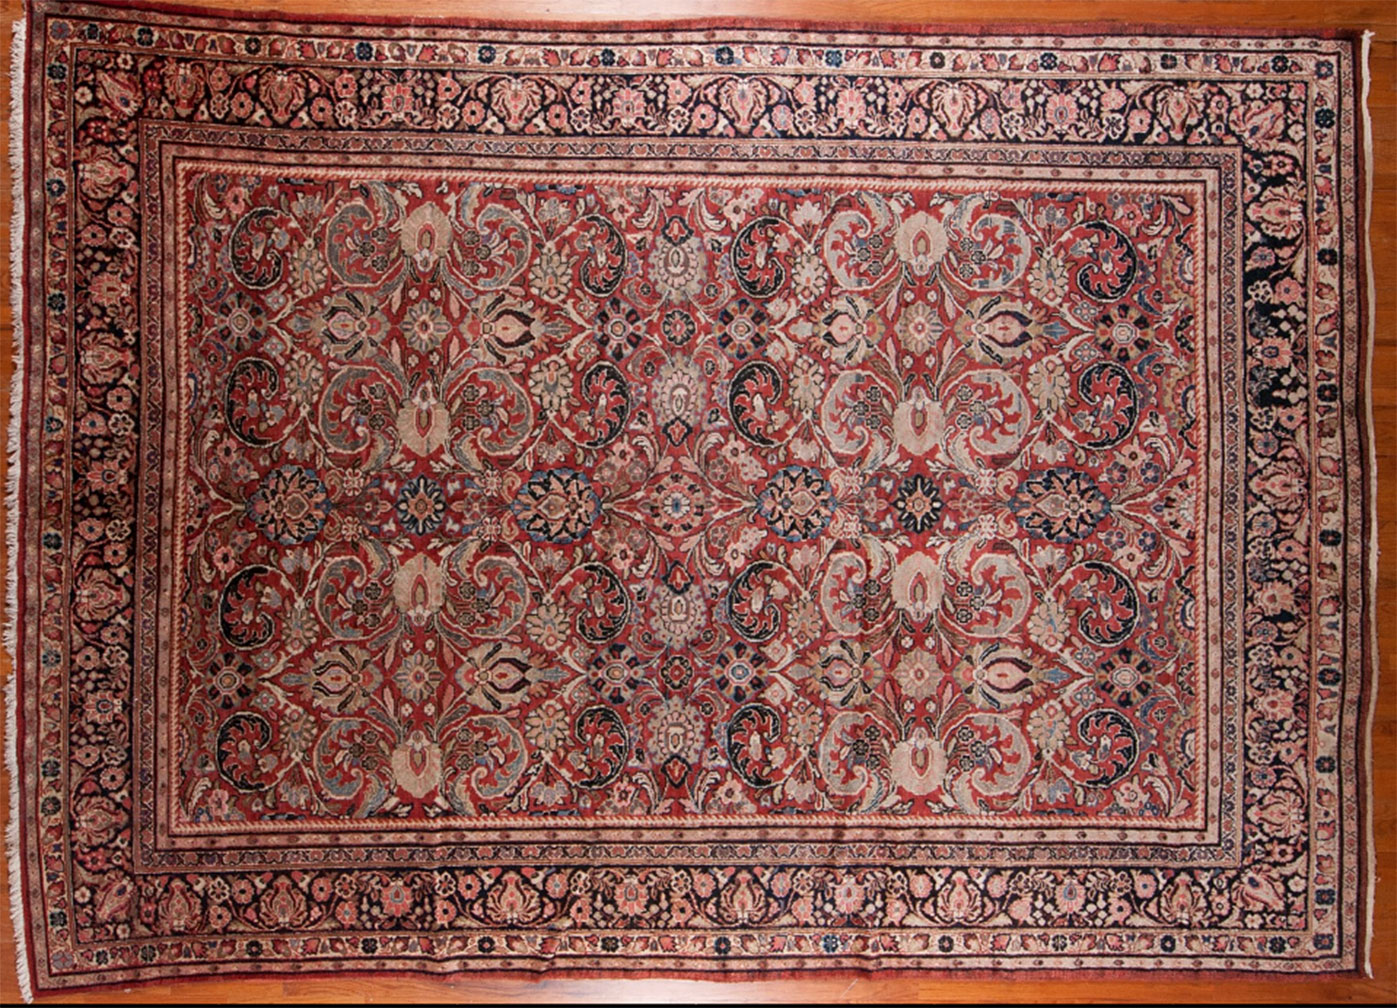 Antique mahal Carpet - # 52279